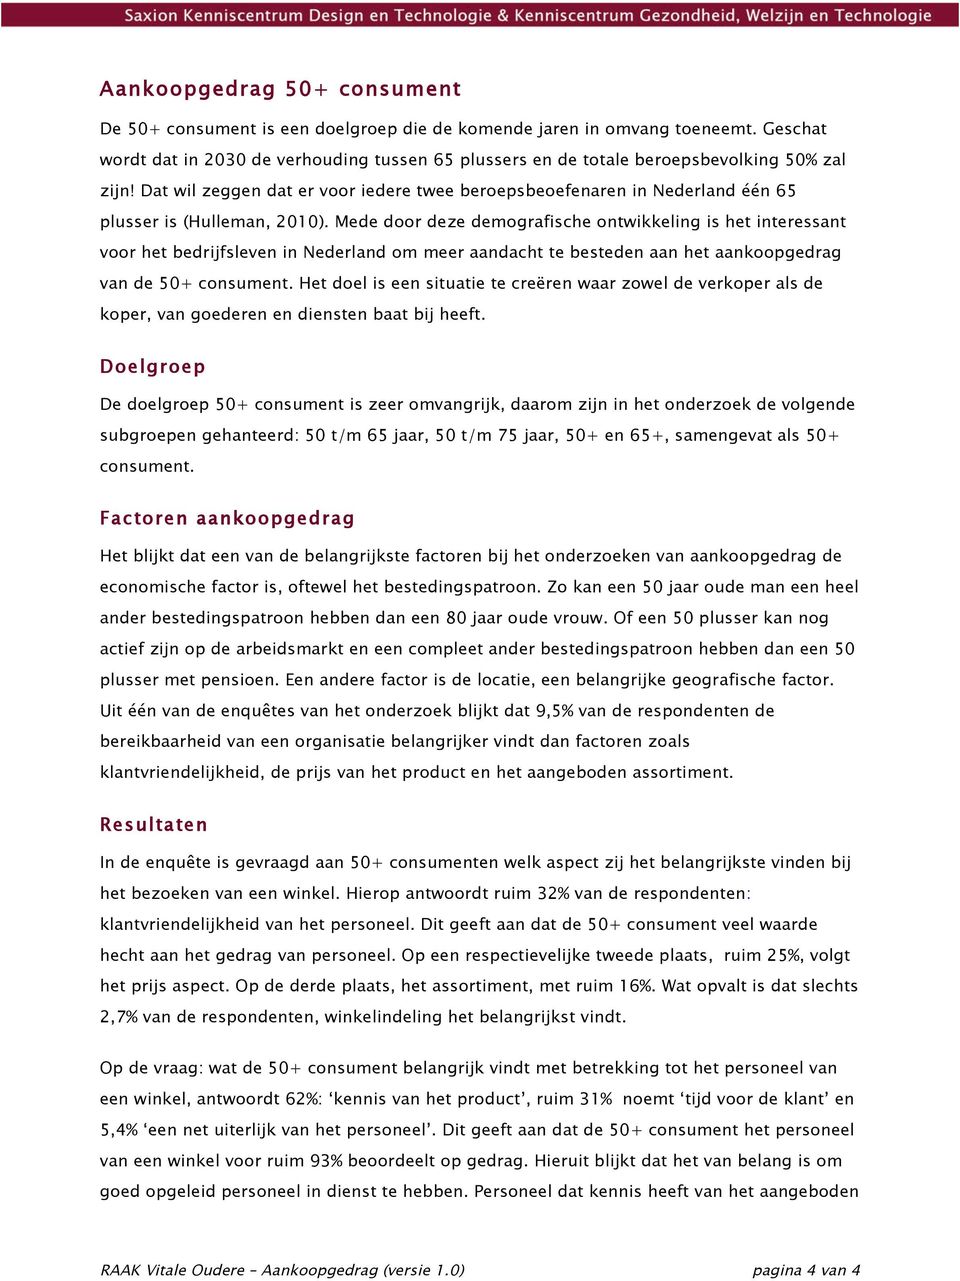 (Hulleman, 2010). Mede door deze demografische ontwikkeling is het interessant voor het bedrijfsleven in Nederland om meer aandacht te besteden aan het aankoopgedrag van de 50+ consument.